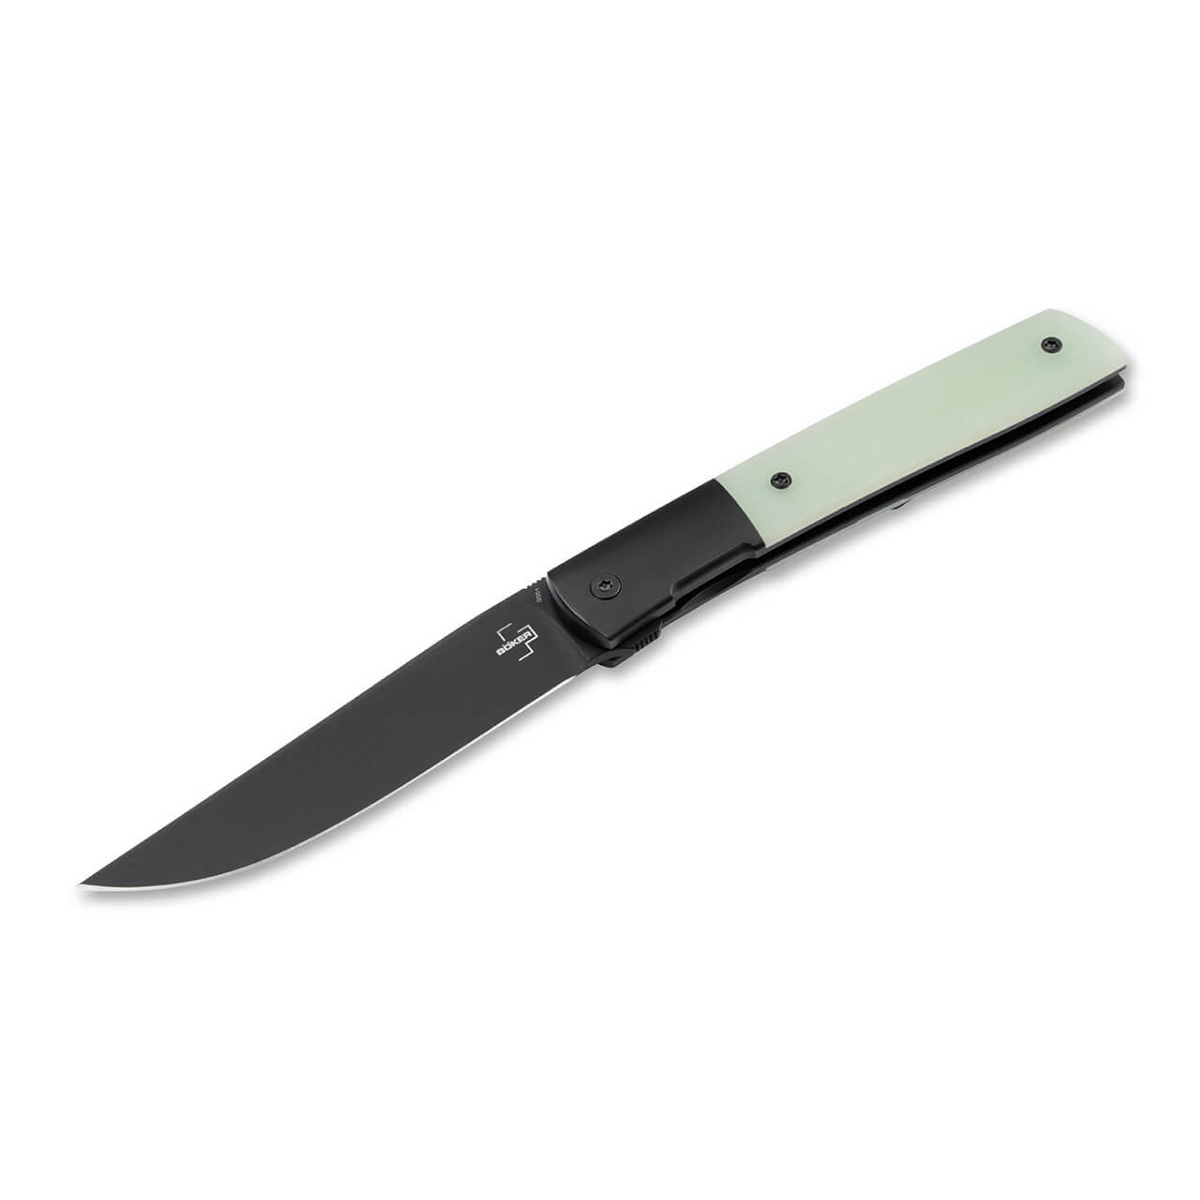 Складной нож Boker Urban Trapper Premium G10 Jade, сталь M390, рукоять титан/Carbon складной нож we knife esprit marble carbon cpm 20cv